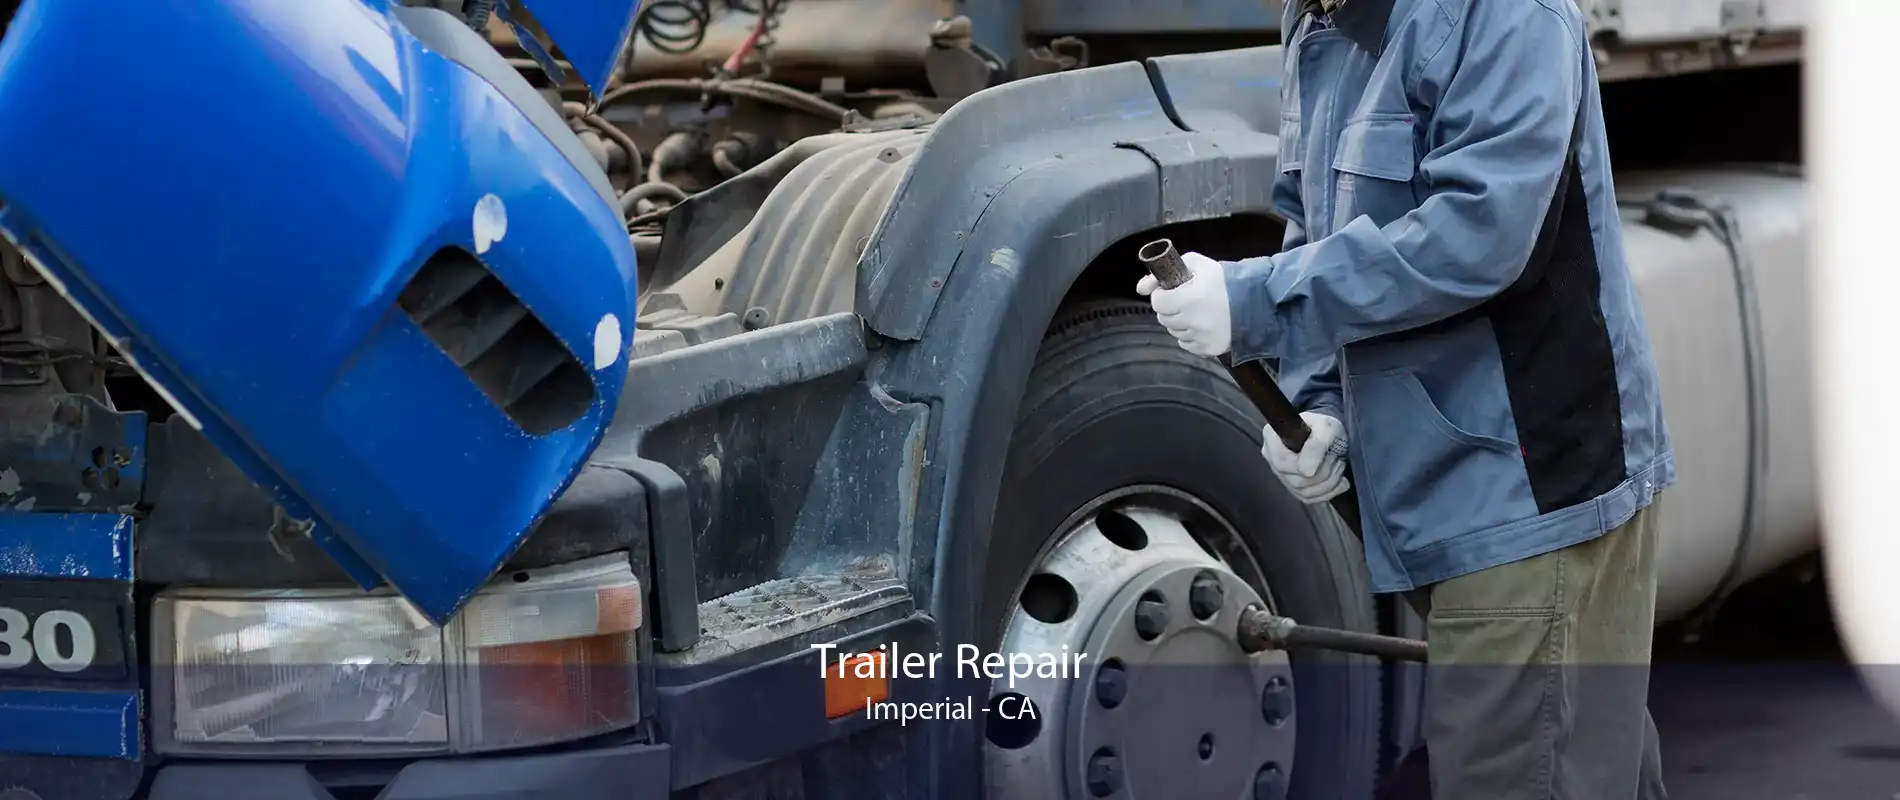 Trailer Repair Imperial - CA